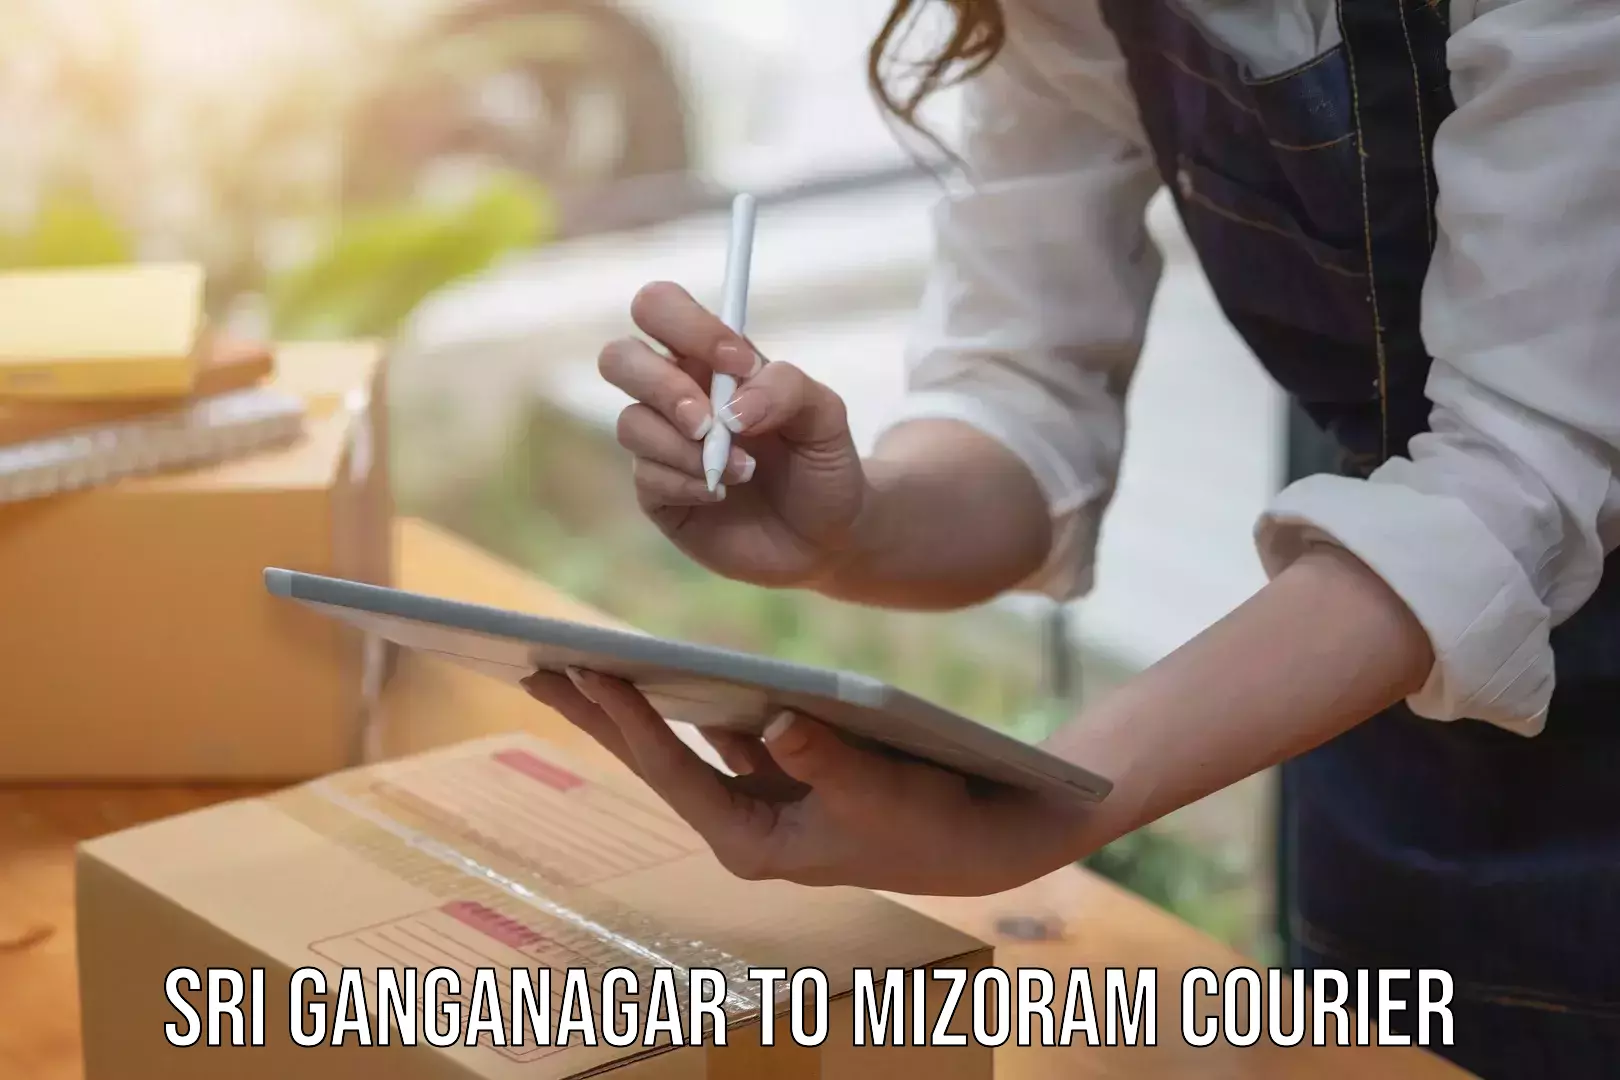 24/7 courier service Sri Ganganagar to Darlawn